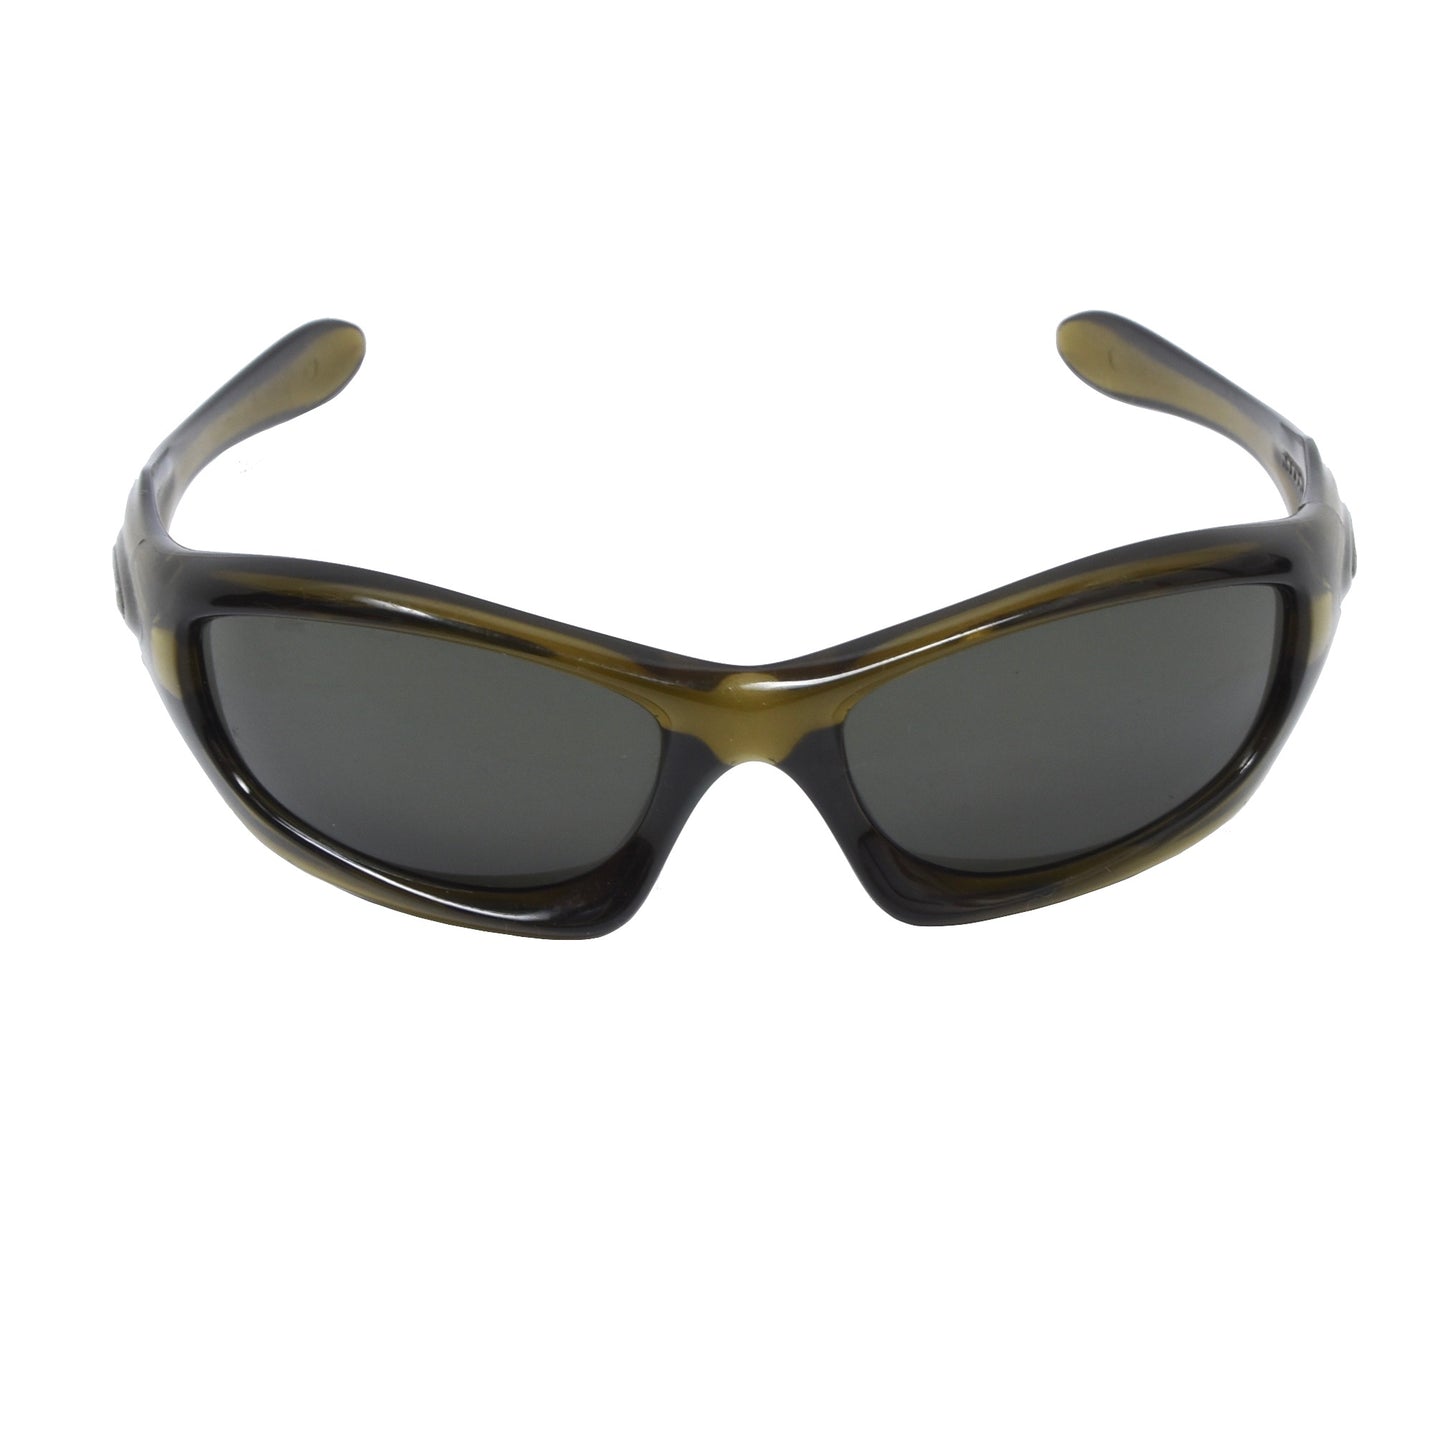 Oakley Monster Dog Sunglasses - Dark Translucent Olive